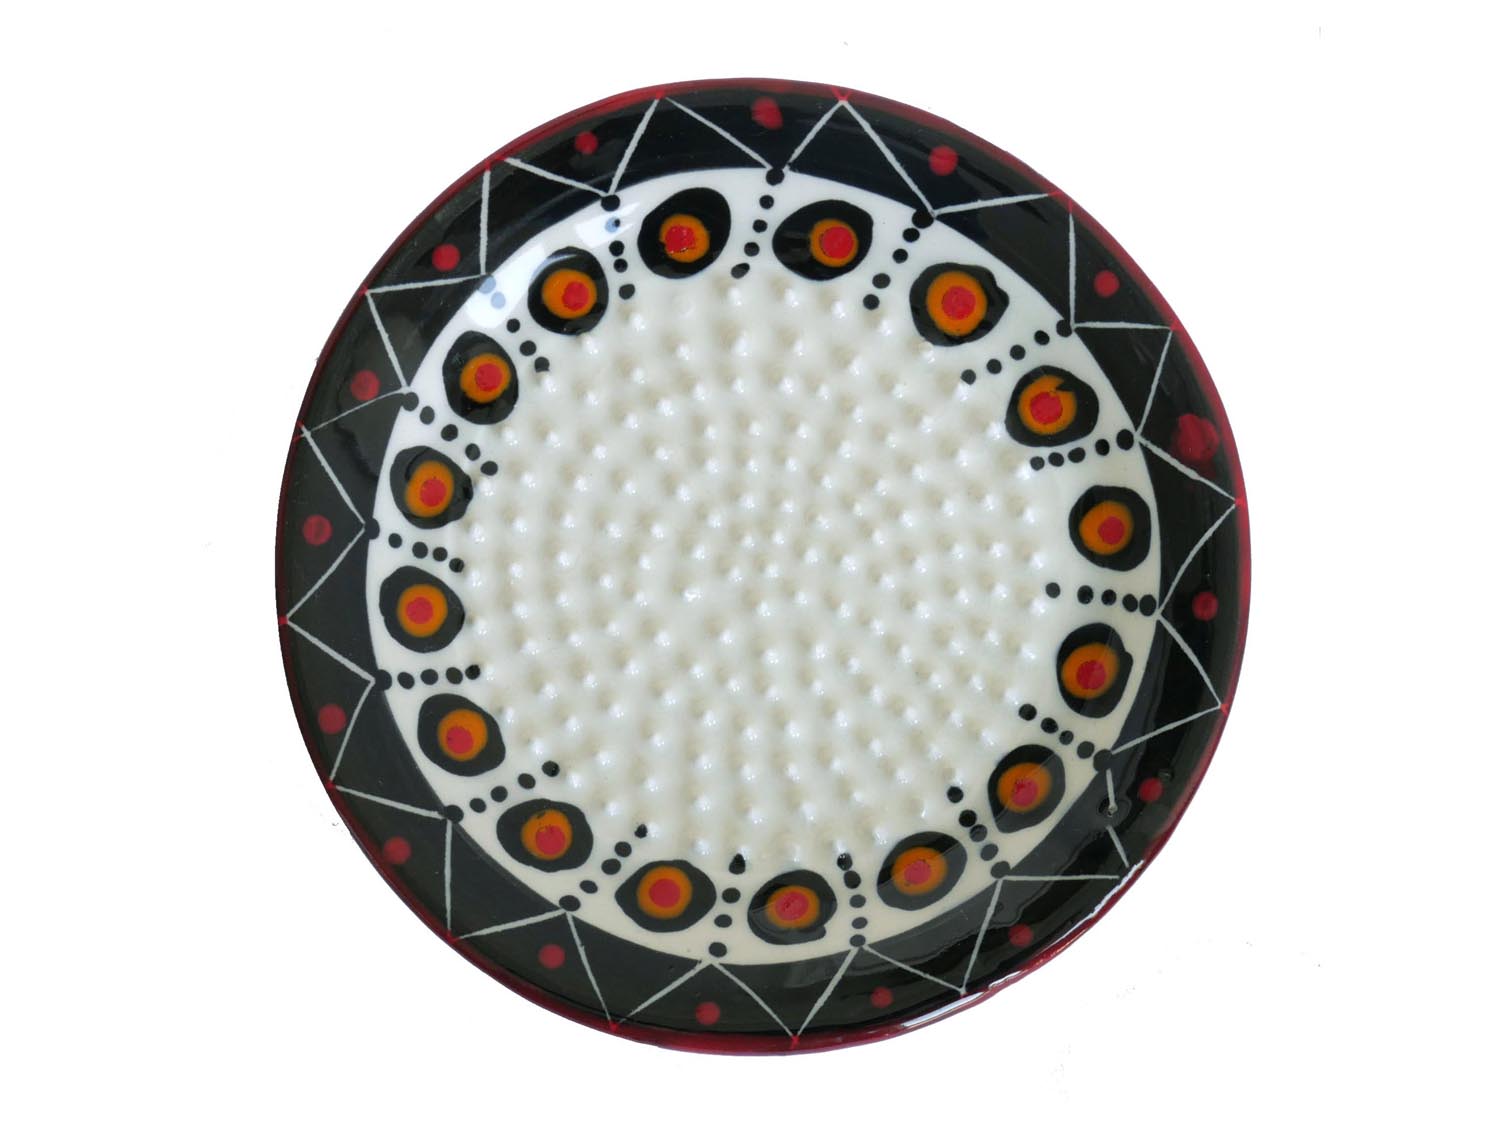 Keramikreibe - bemalte Reibe für Ingwer und Knoblauch - weiß, schwarz